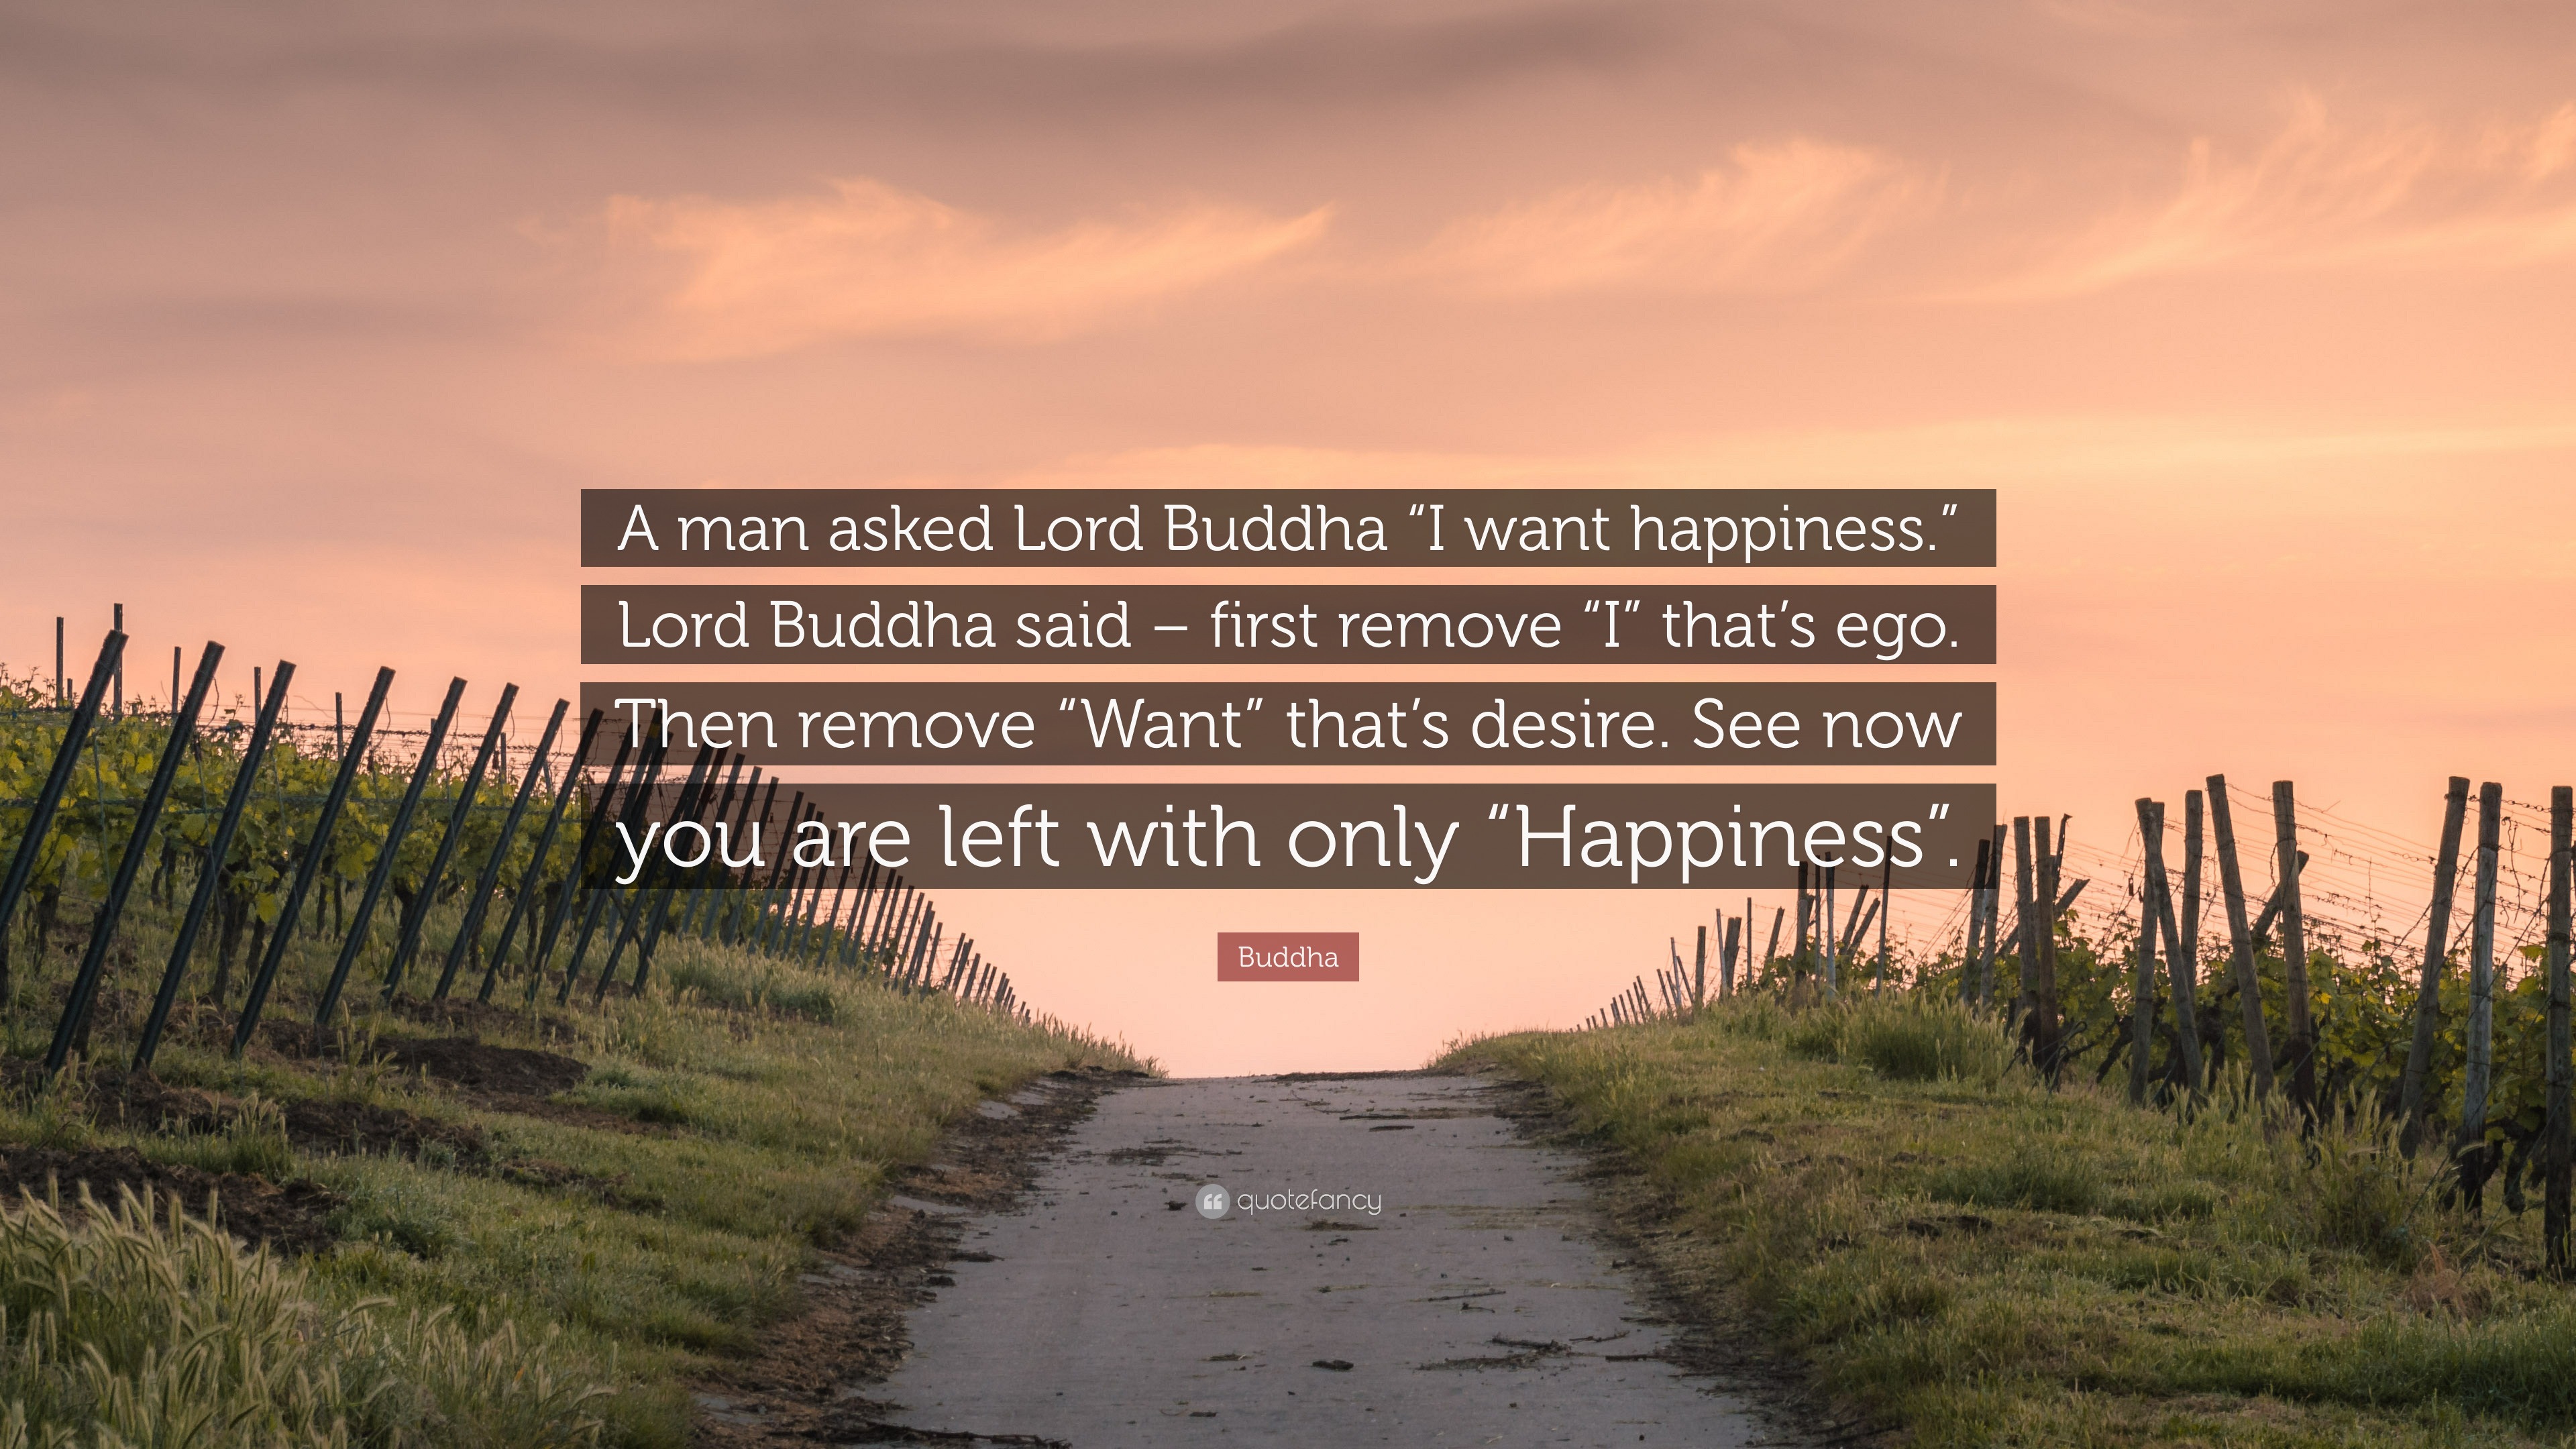 Buddha Quote: “A man asked Lord Buddha “I want happiness.” Lord Buddha